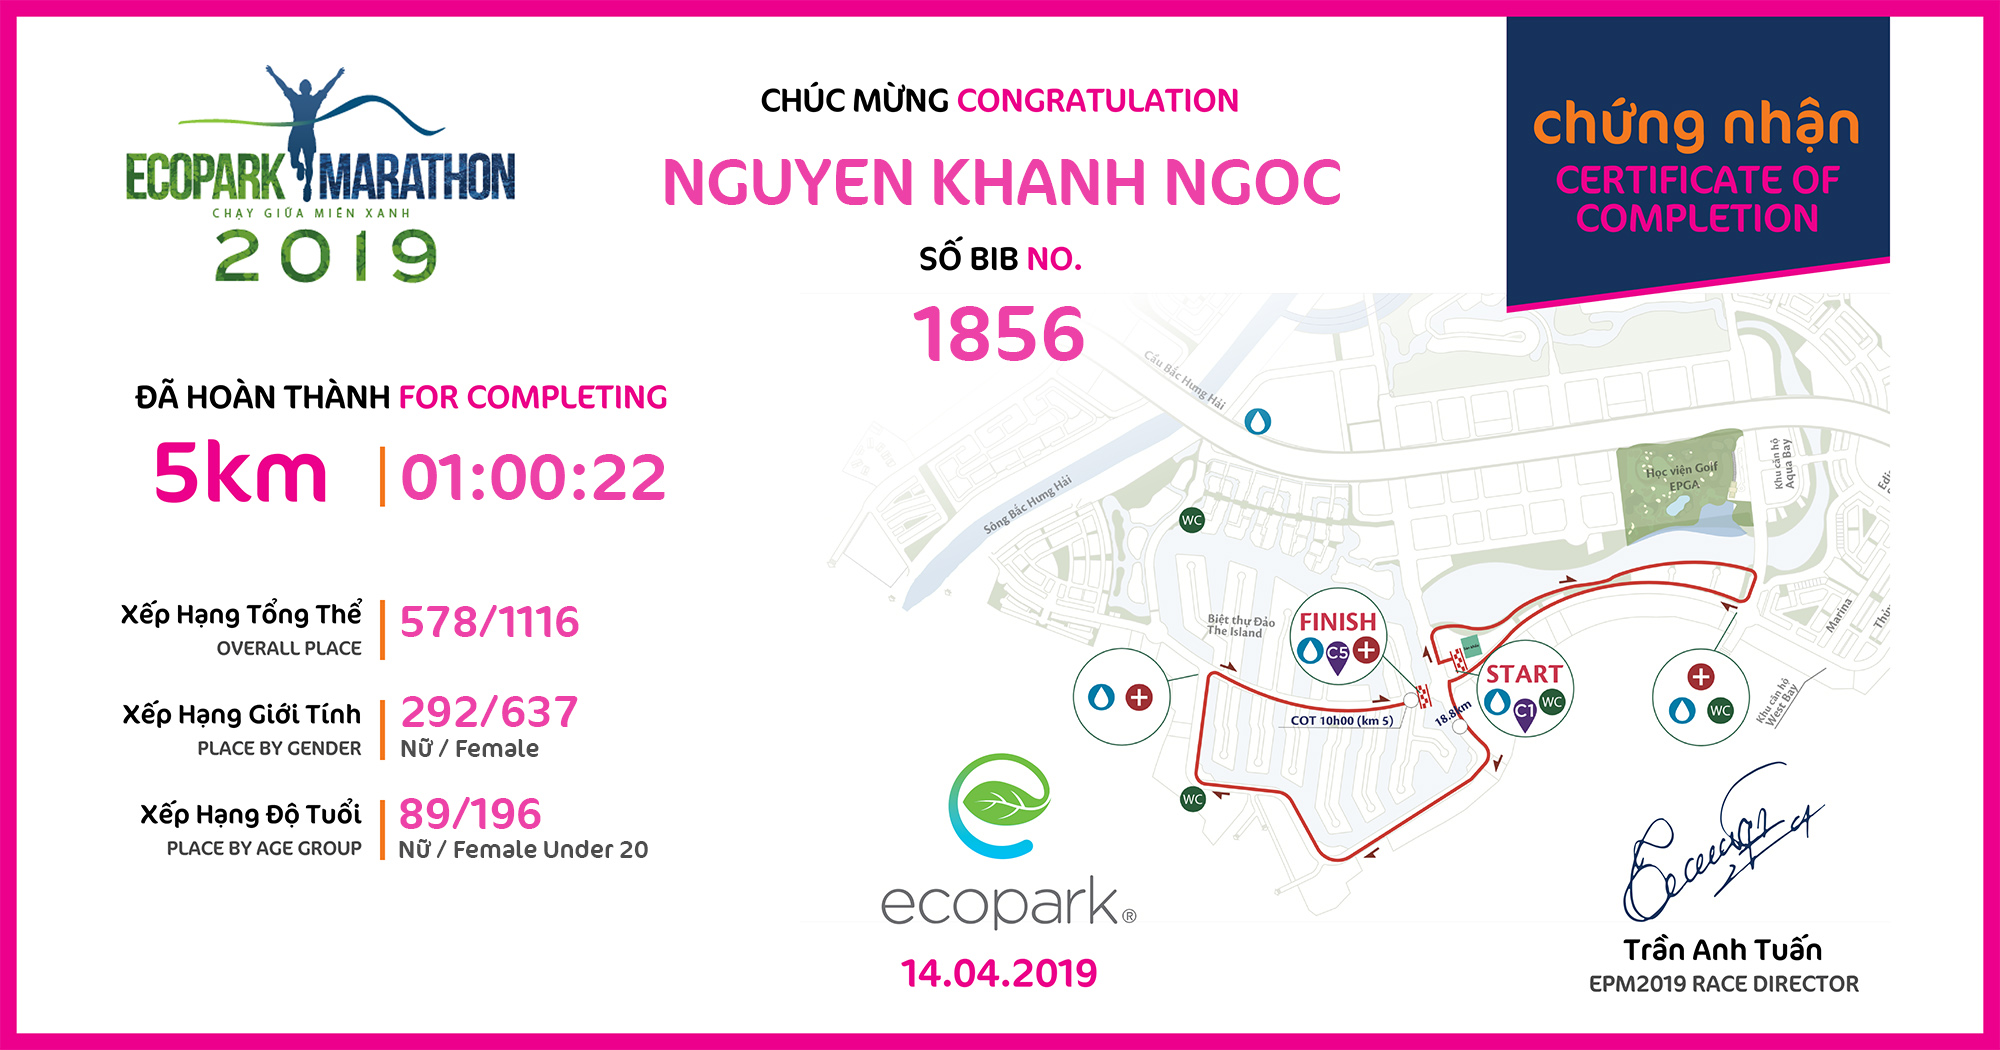 1856 - Nguyen Khanh Ngoc